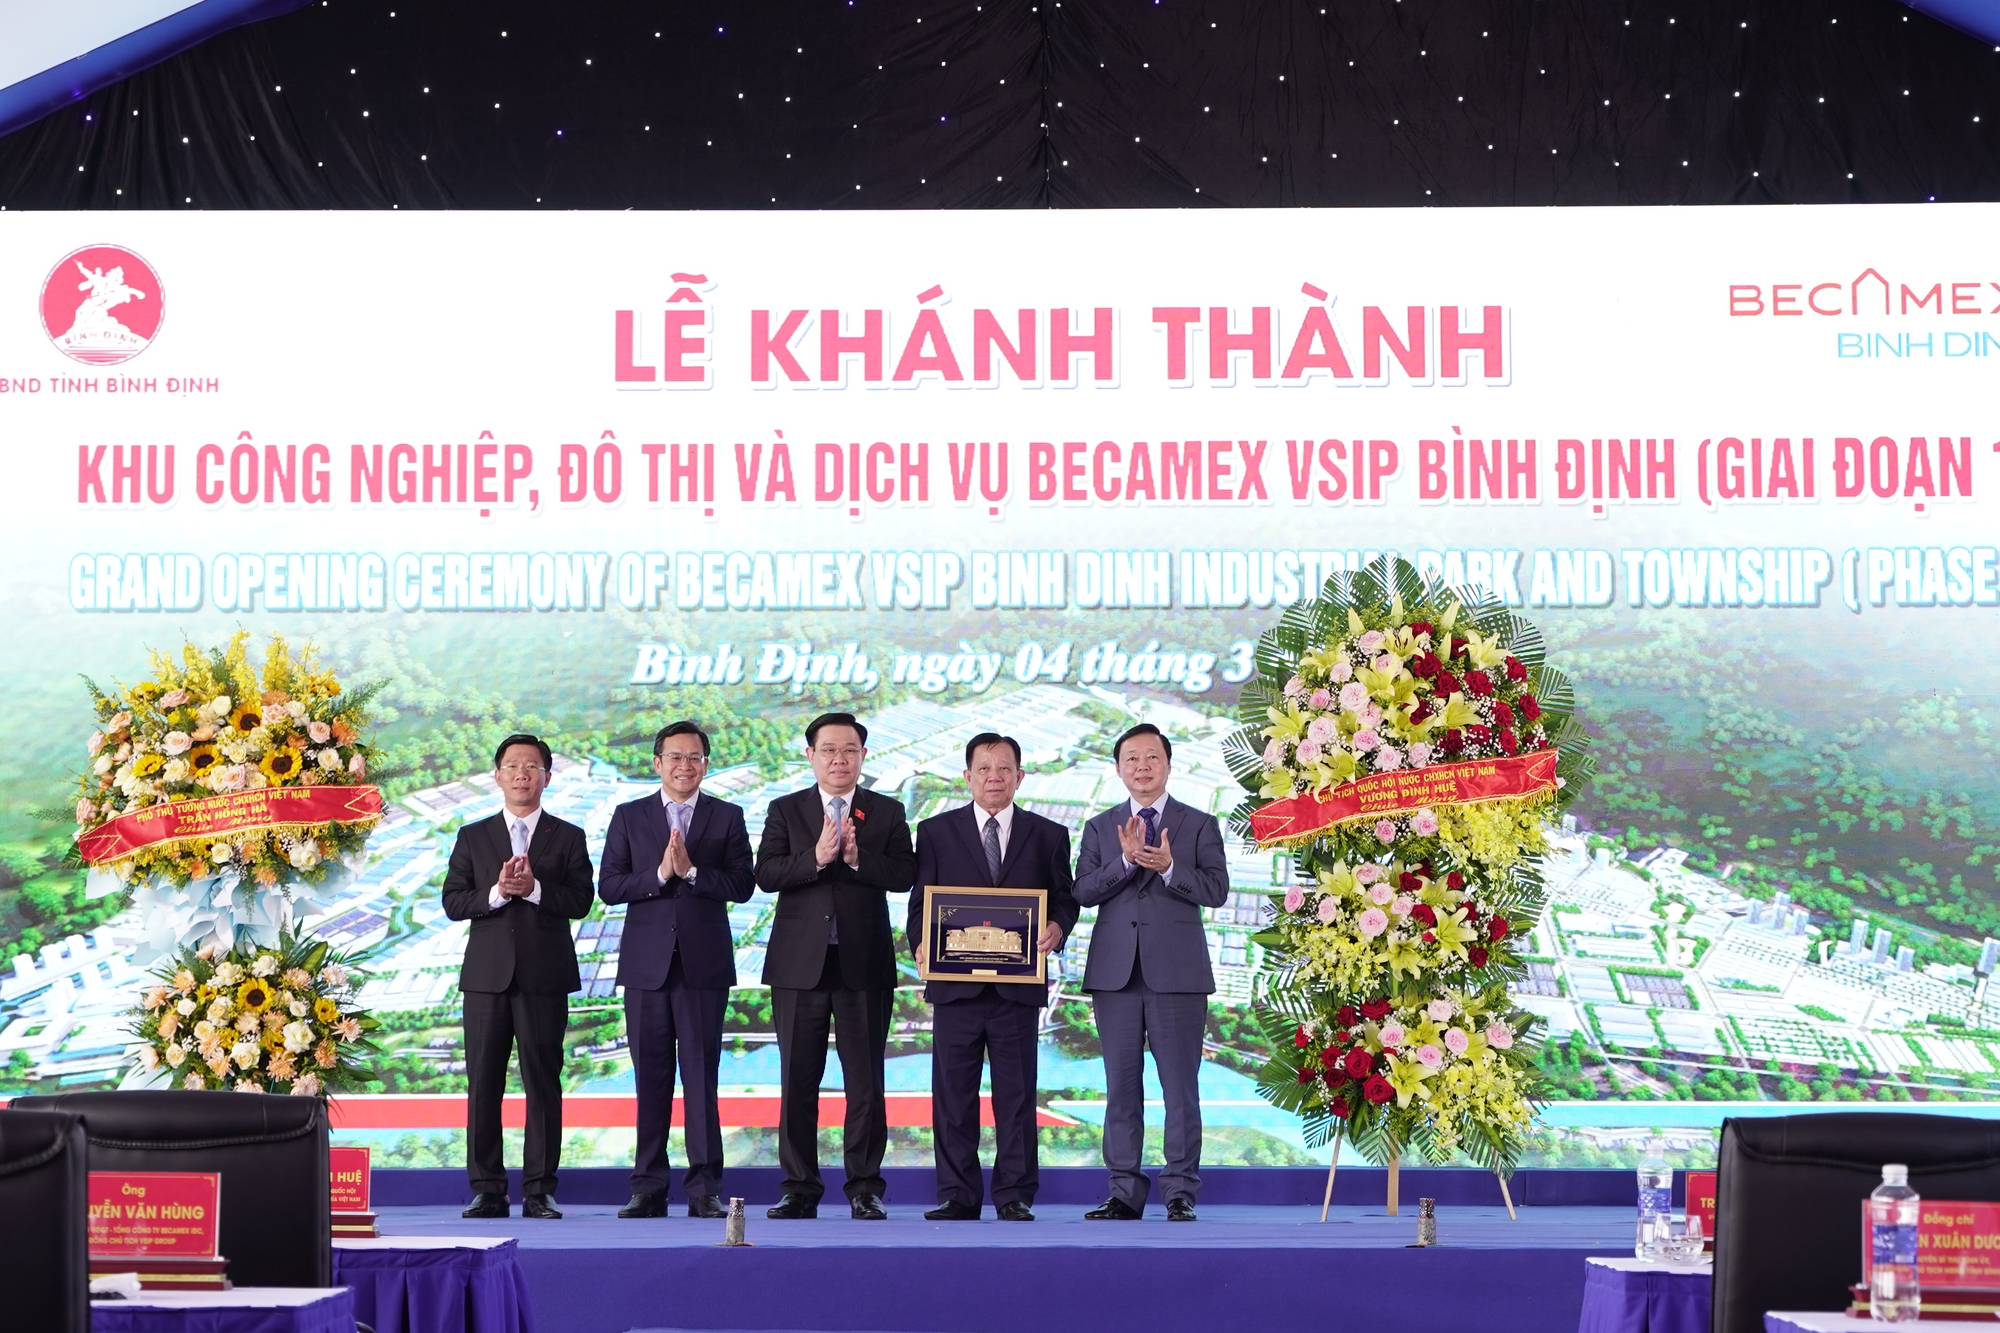 Chủ tịch tỉnh kêu gọi đầu tư tại lễ khánh thành khu công nghiệp, đô thị hơn 7.500 tỷ ở Bình Định- Ảnh 1.